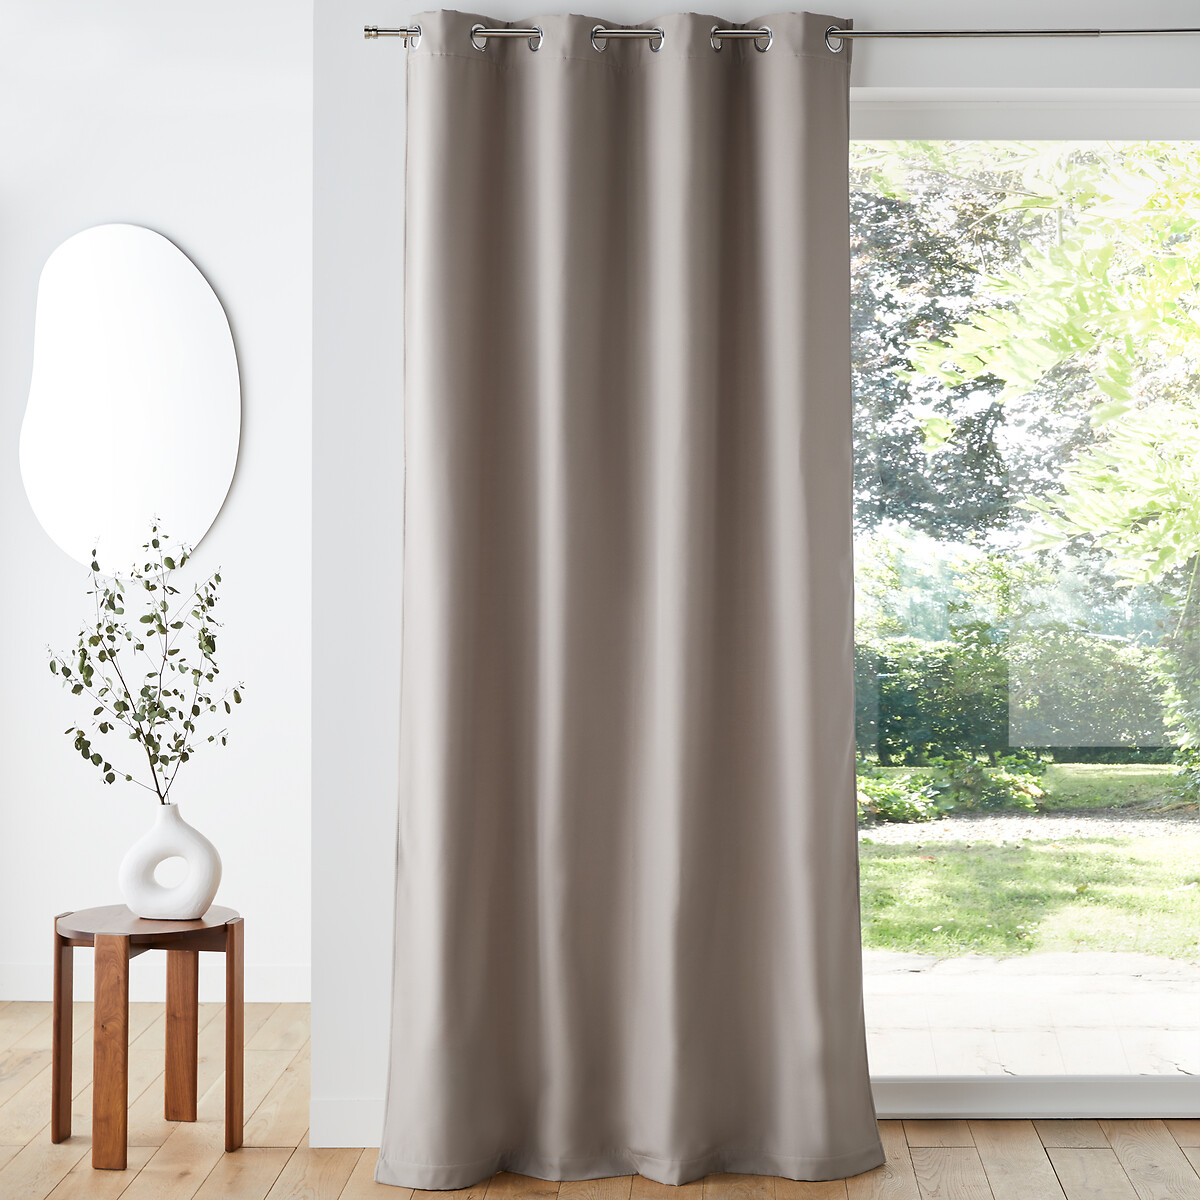 4 cortinas térmicas que te permitirán aislar tu hogar del frío y